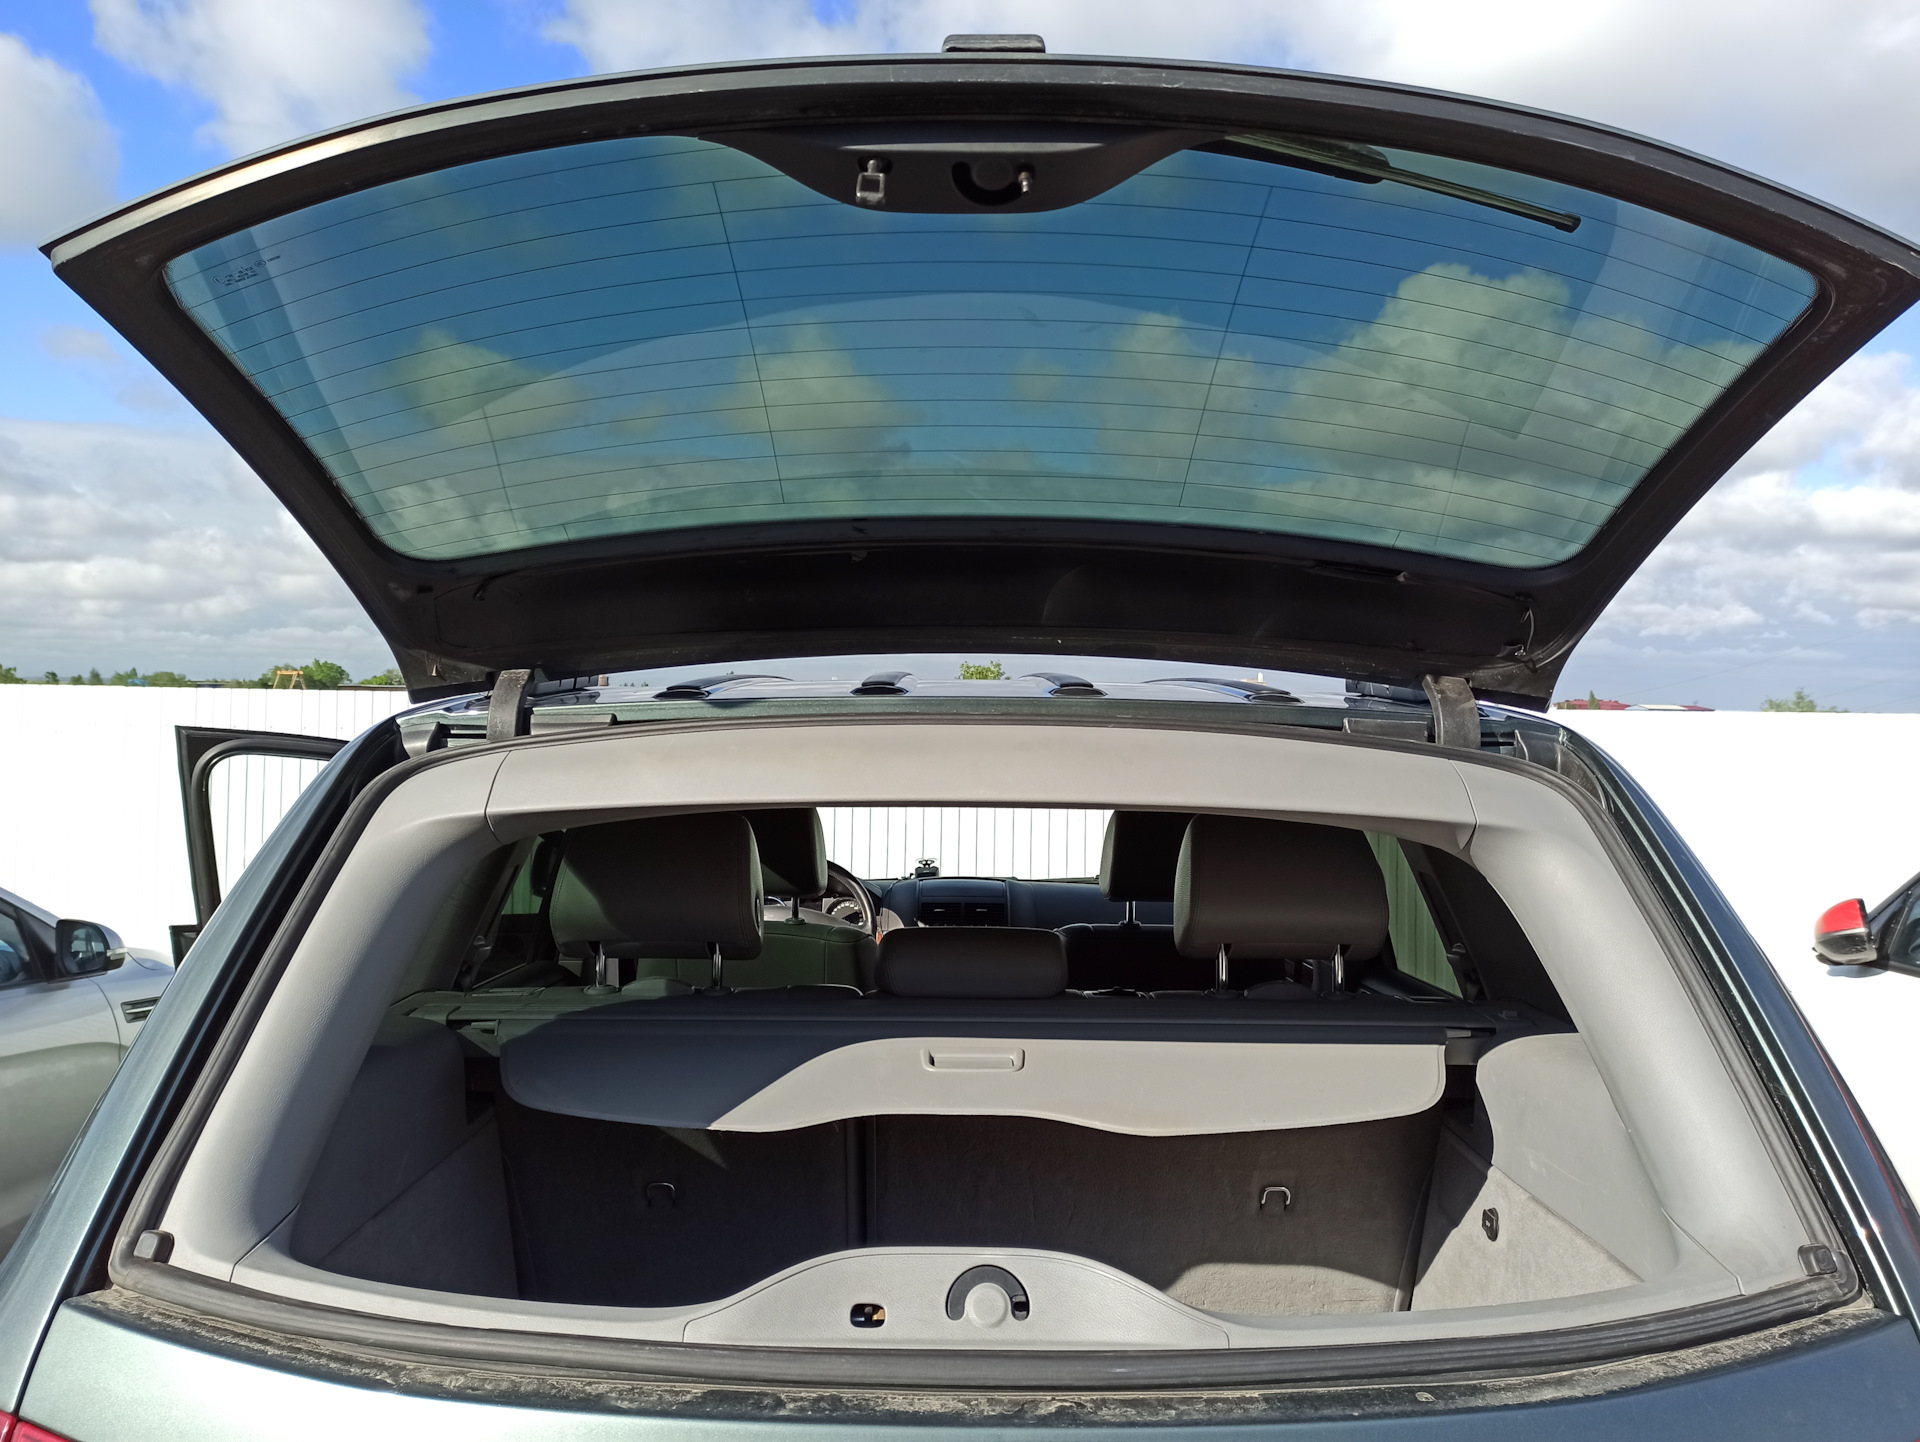 Рено лагуна универсал багажник. BMW e61 стекло багажника. Открывающиеся стекло багажника. Универсалы с открывающимся стеклом. Универсалы с открывающимся стеклом багажника.